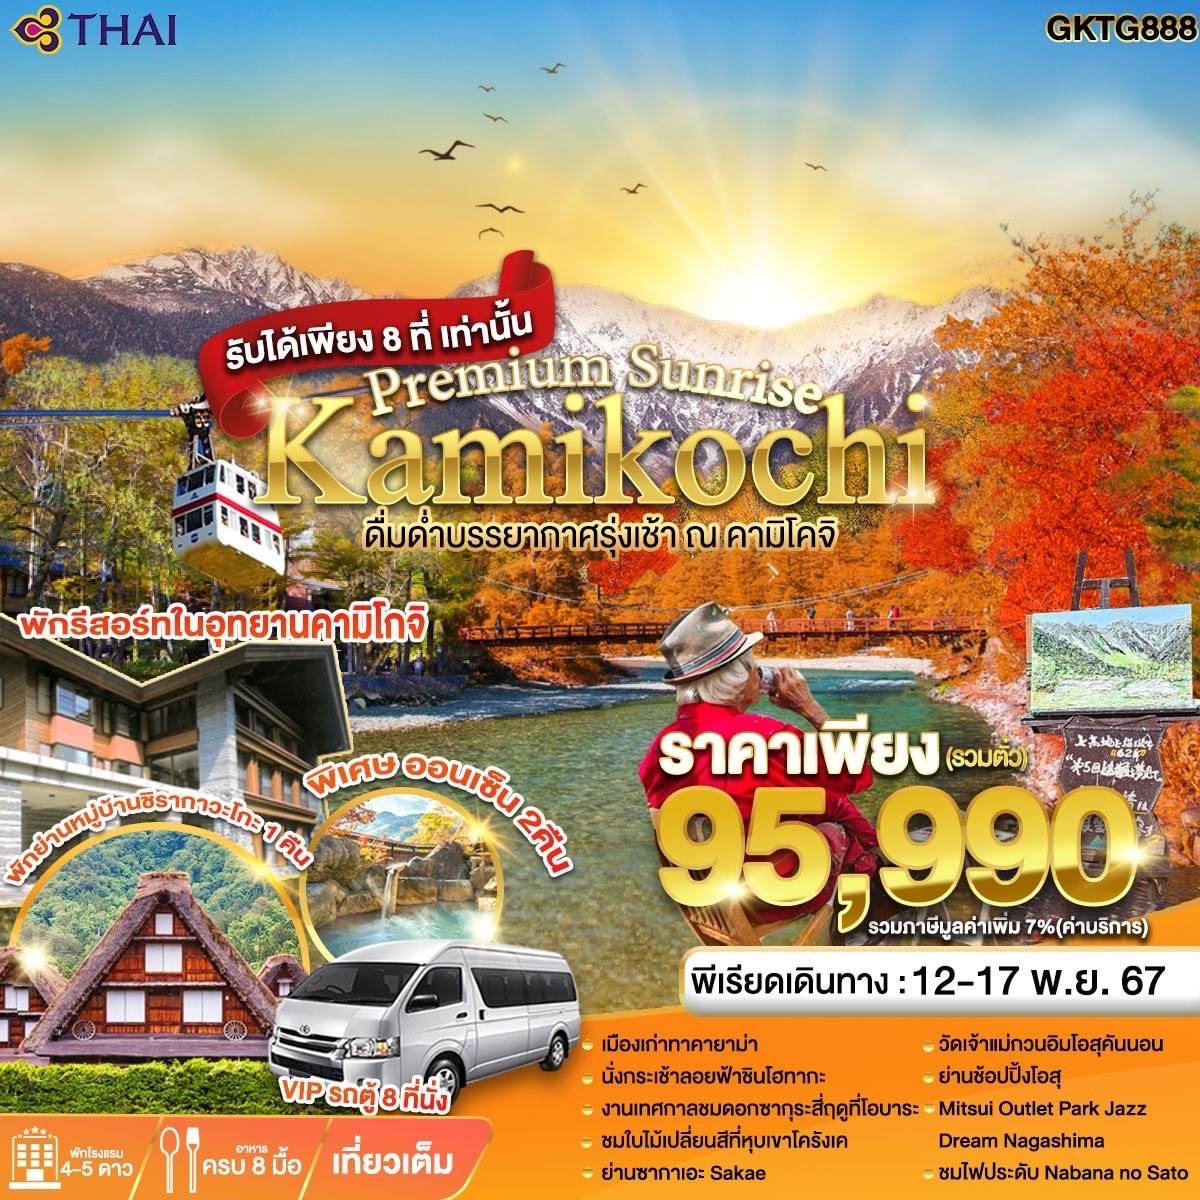 Kamikochi คามิโคจิ 6 วัน 4 คืน เดินทาง 12-17 พ.ย.67 ราคา 95,990.- Thai Airways (TG)